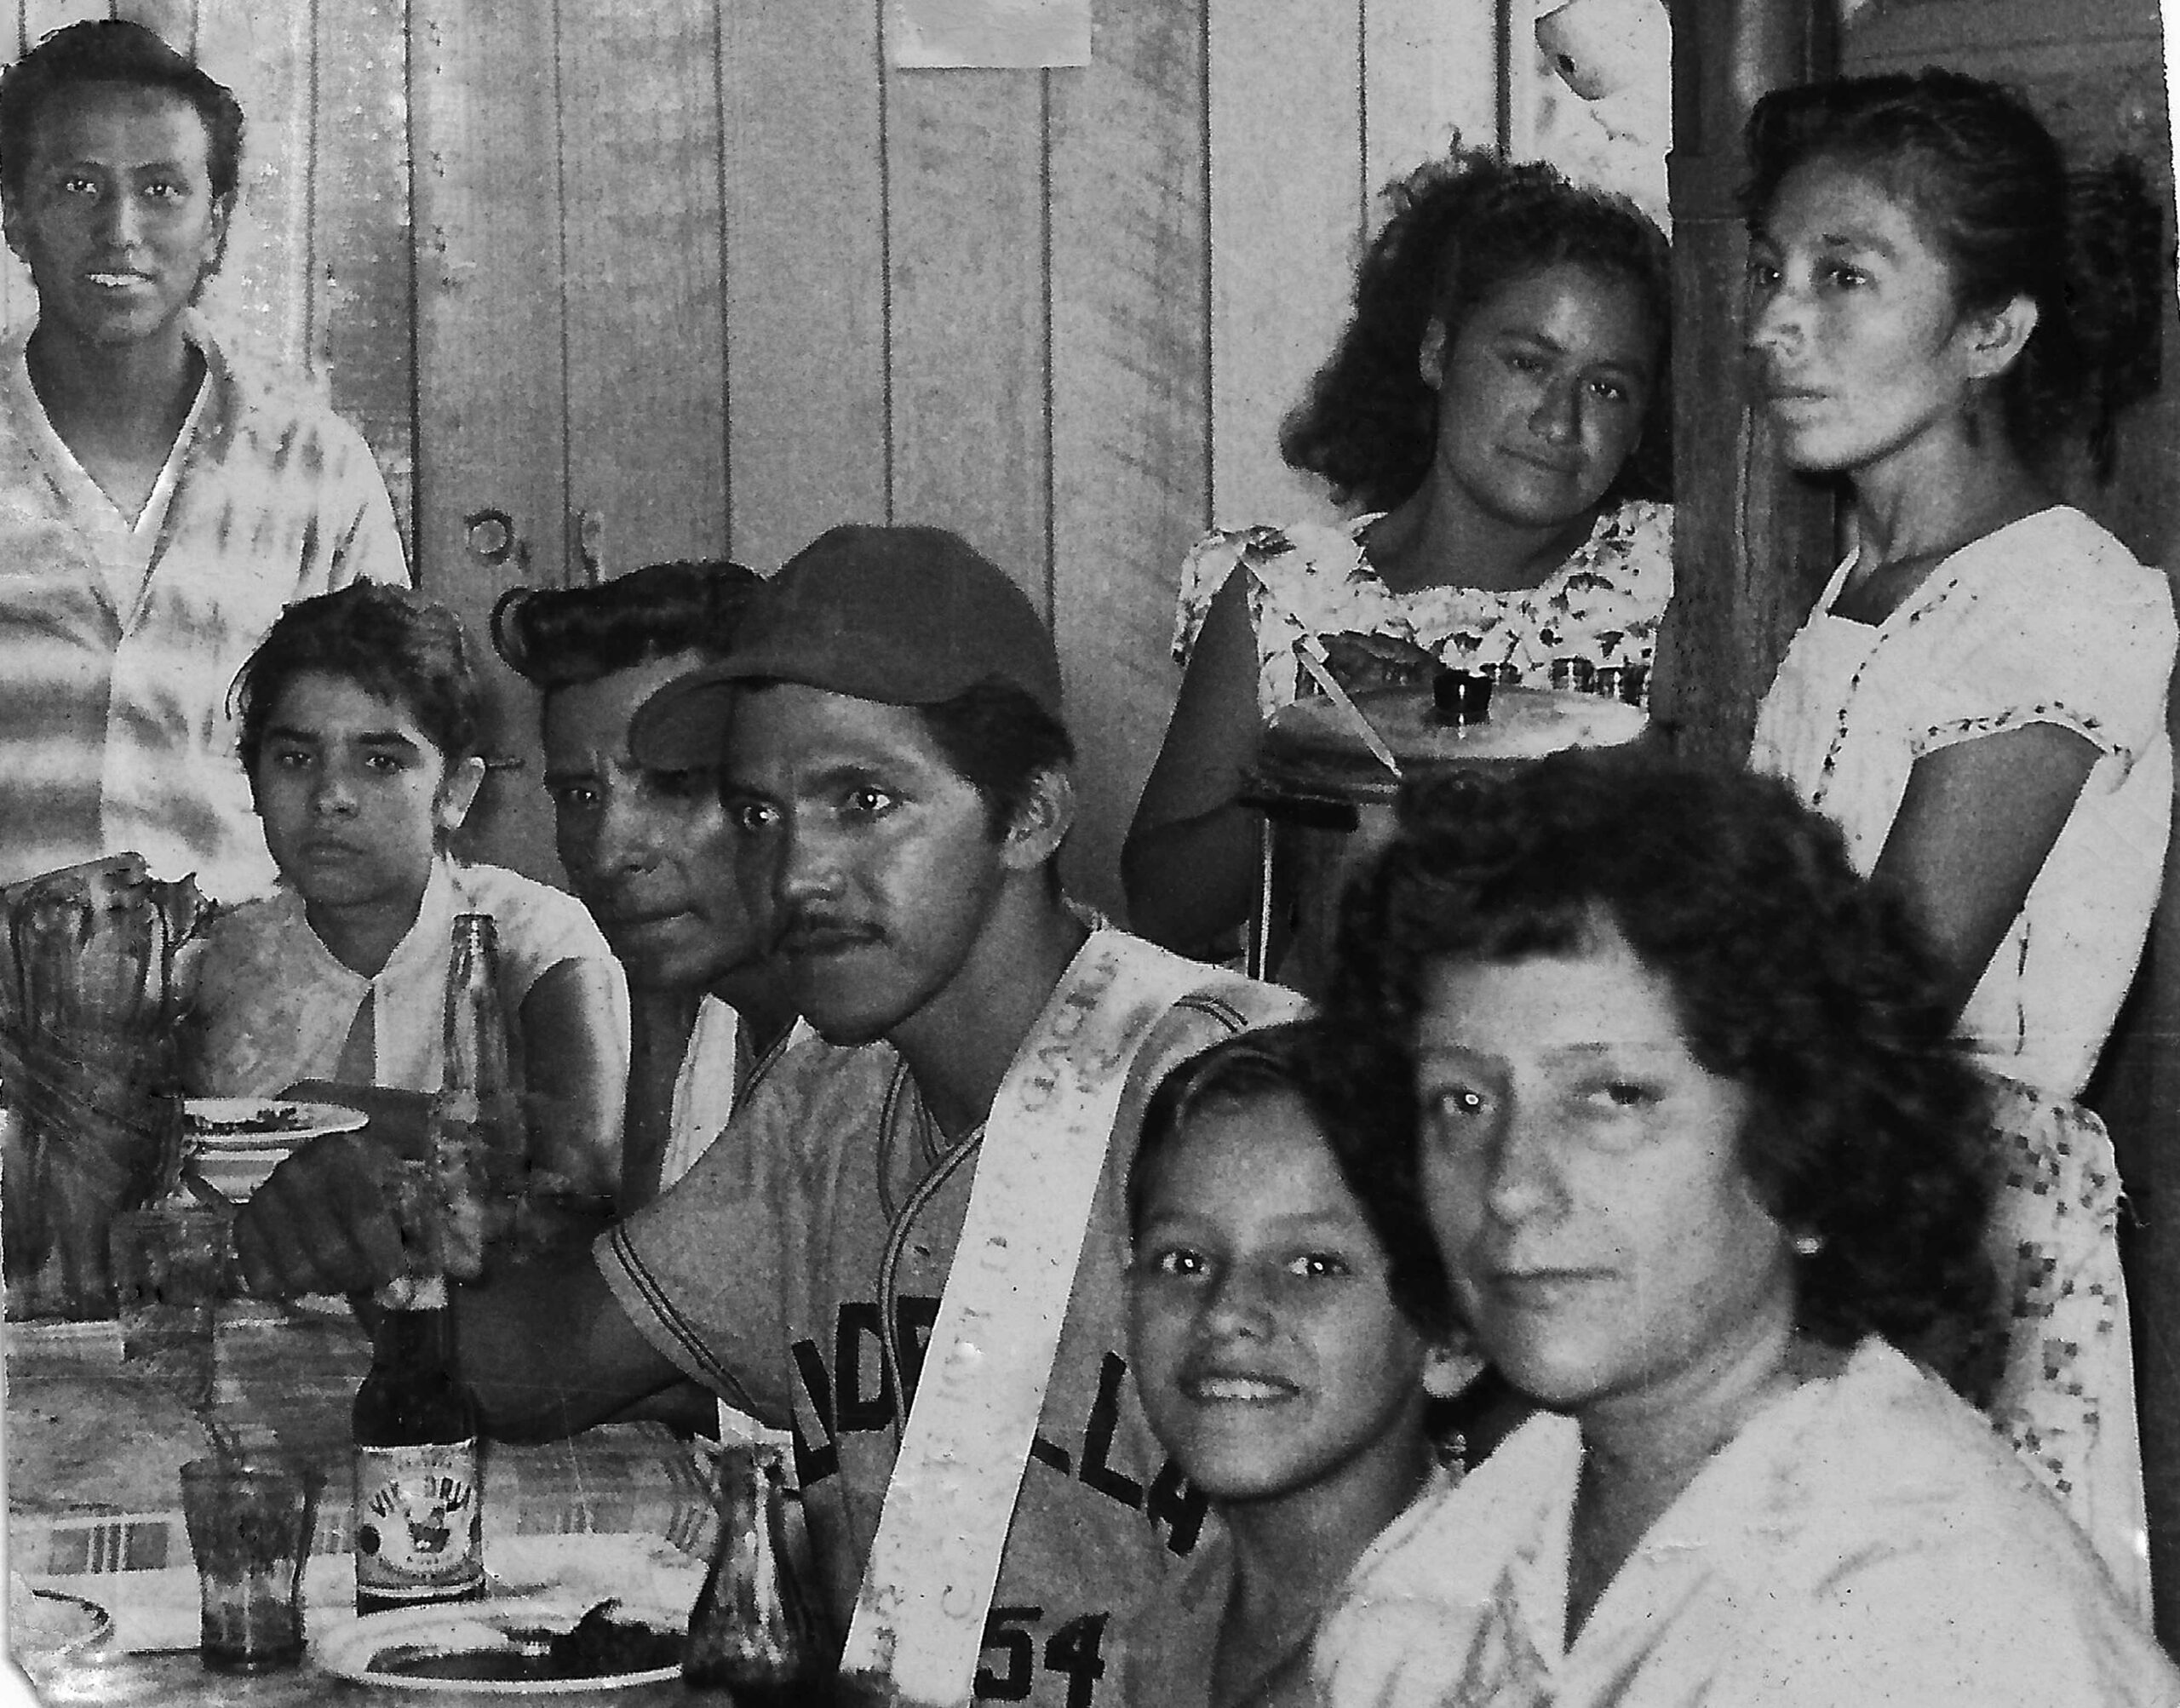 Festejando en familia, después de un merecido juego de béisbol, el peón de vía  Margarito López Martínez en la ranchería  Los Cocos, Mpio. de Tónala, Chiapas, 1959.